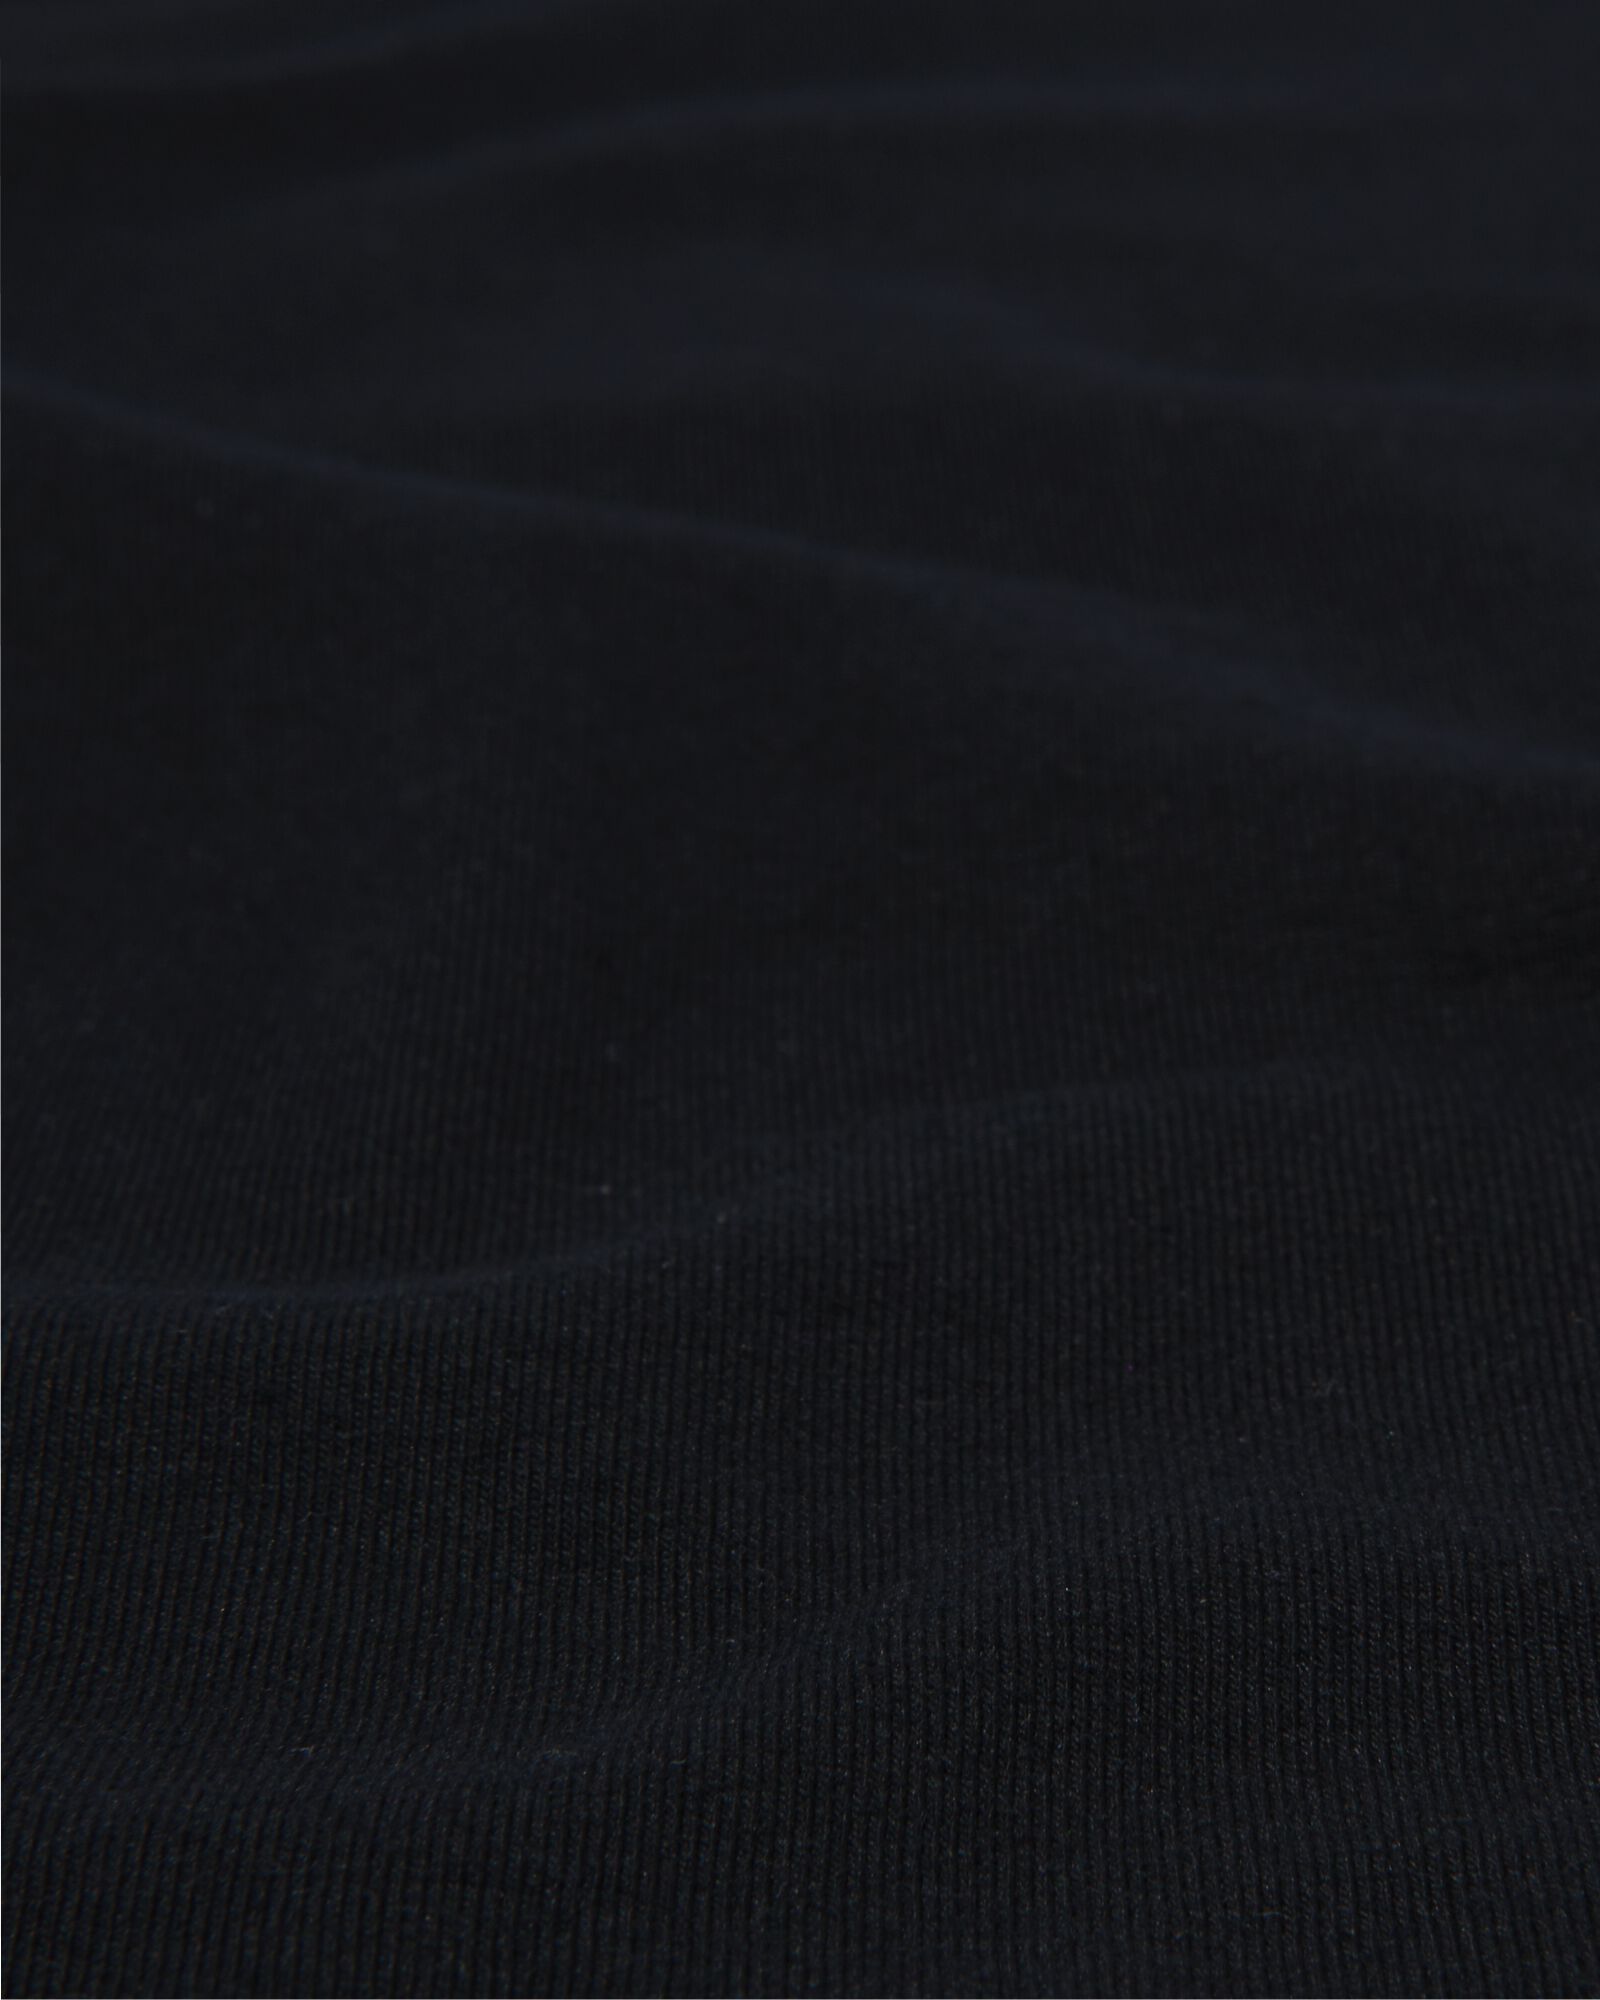 t-shirt femme classique noir noir - 1000005475 - HEMA